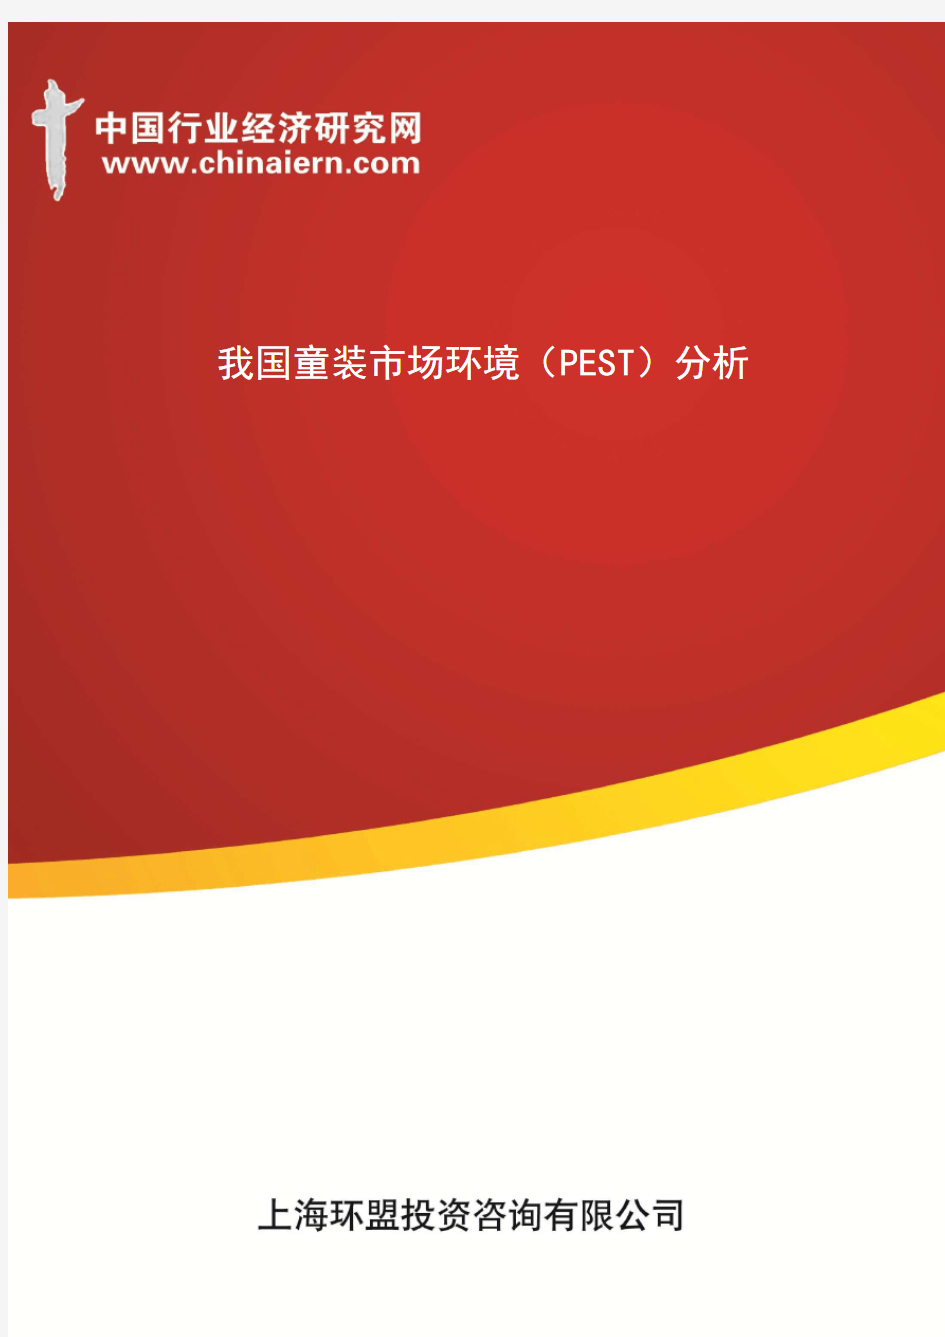 我国童装市场环境(PEST)分析(上海环盟)